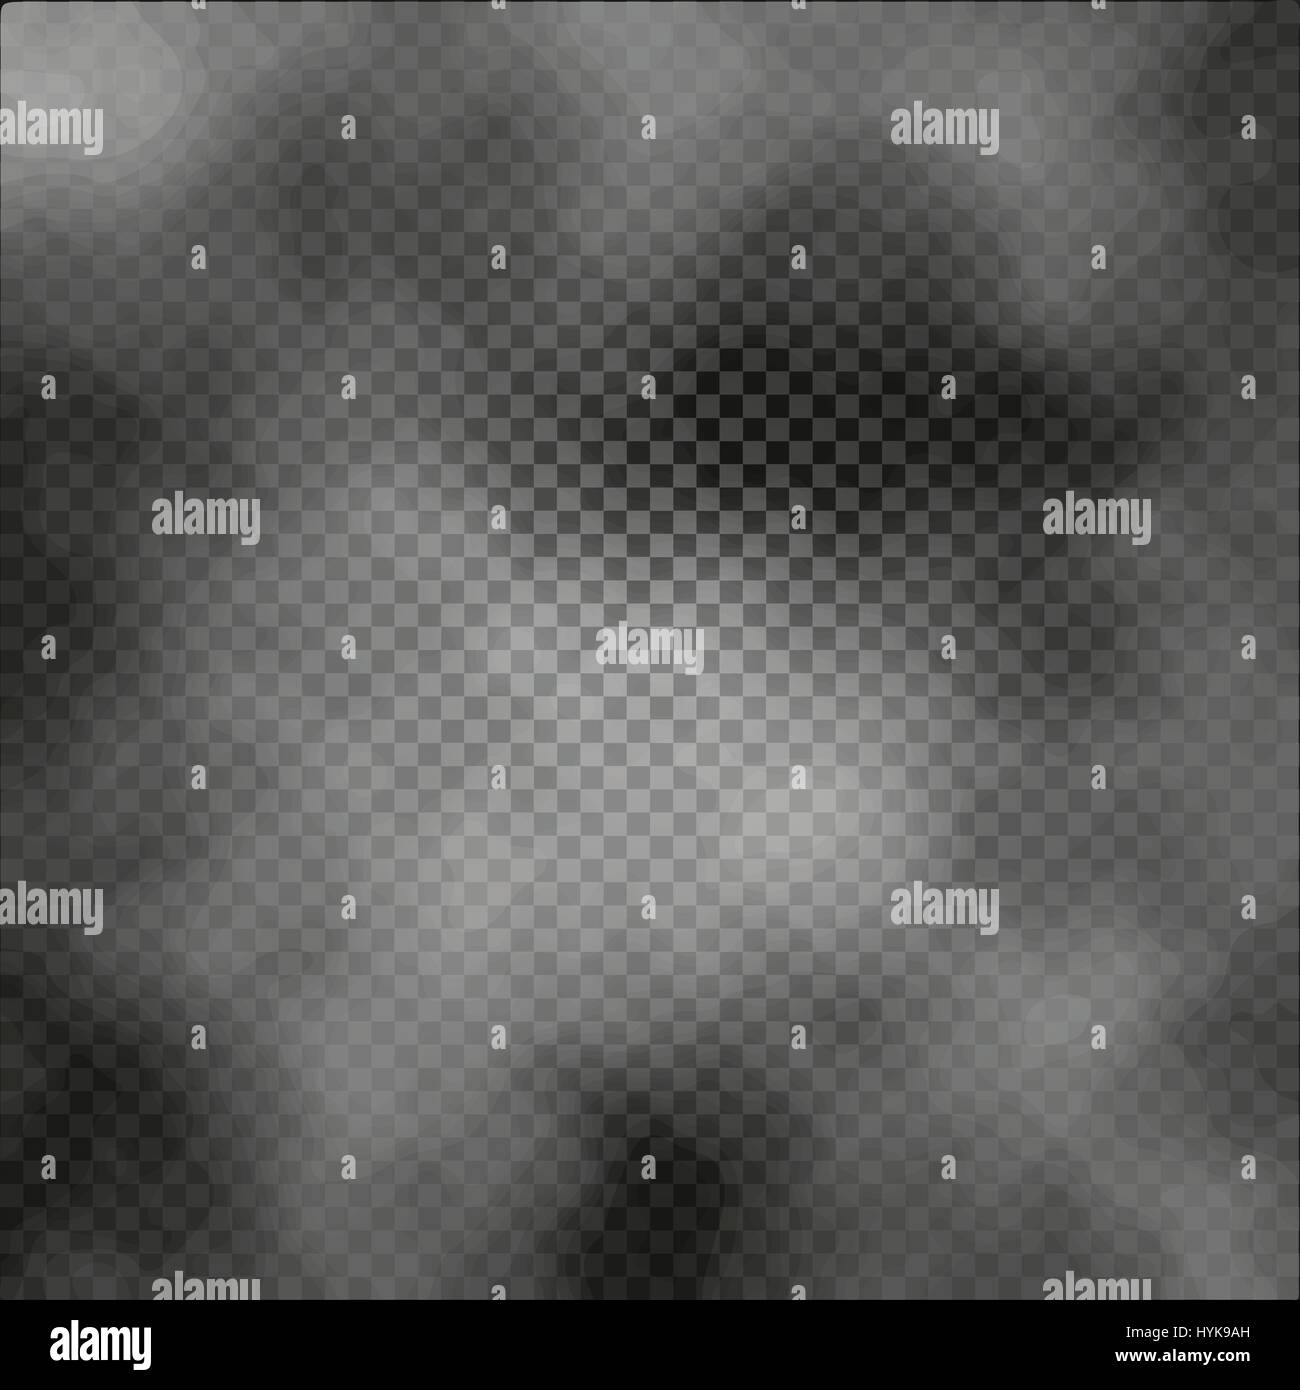 Nebel oder Rauch isolierte transparente Spezialeffekt auf dunklen karierten Hintergrund nebligen Hintergrund Vektor-illustration Stock Vektor